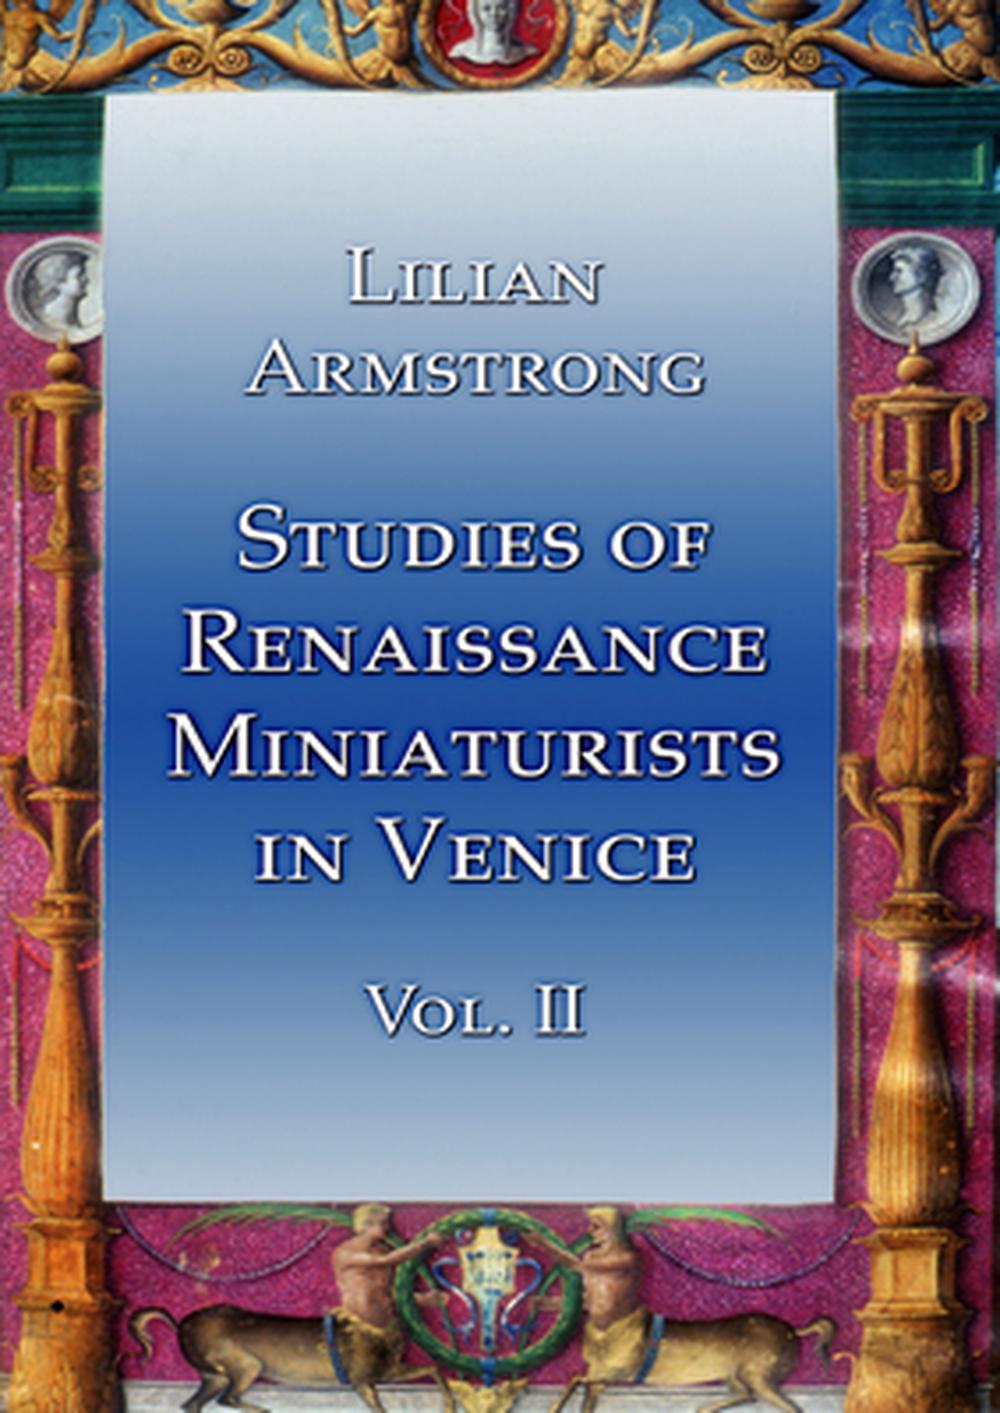 Studien der Renaissance-Miniaturisten in Venedig Vol II von Lilian Armstrong (englisch - Bild 1 von 1